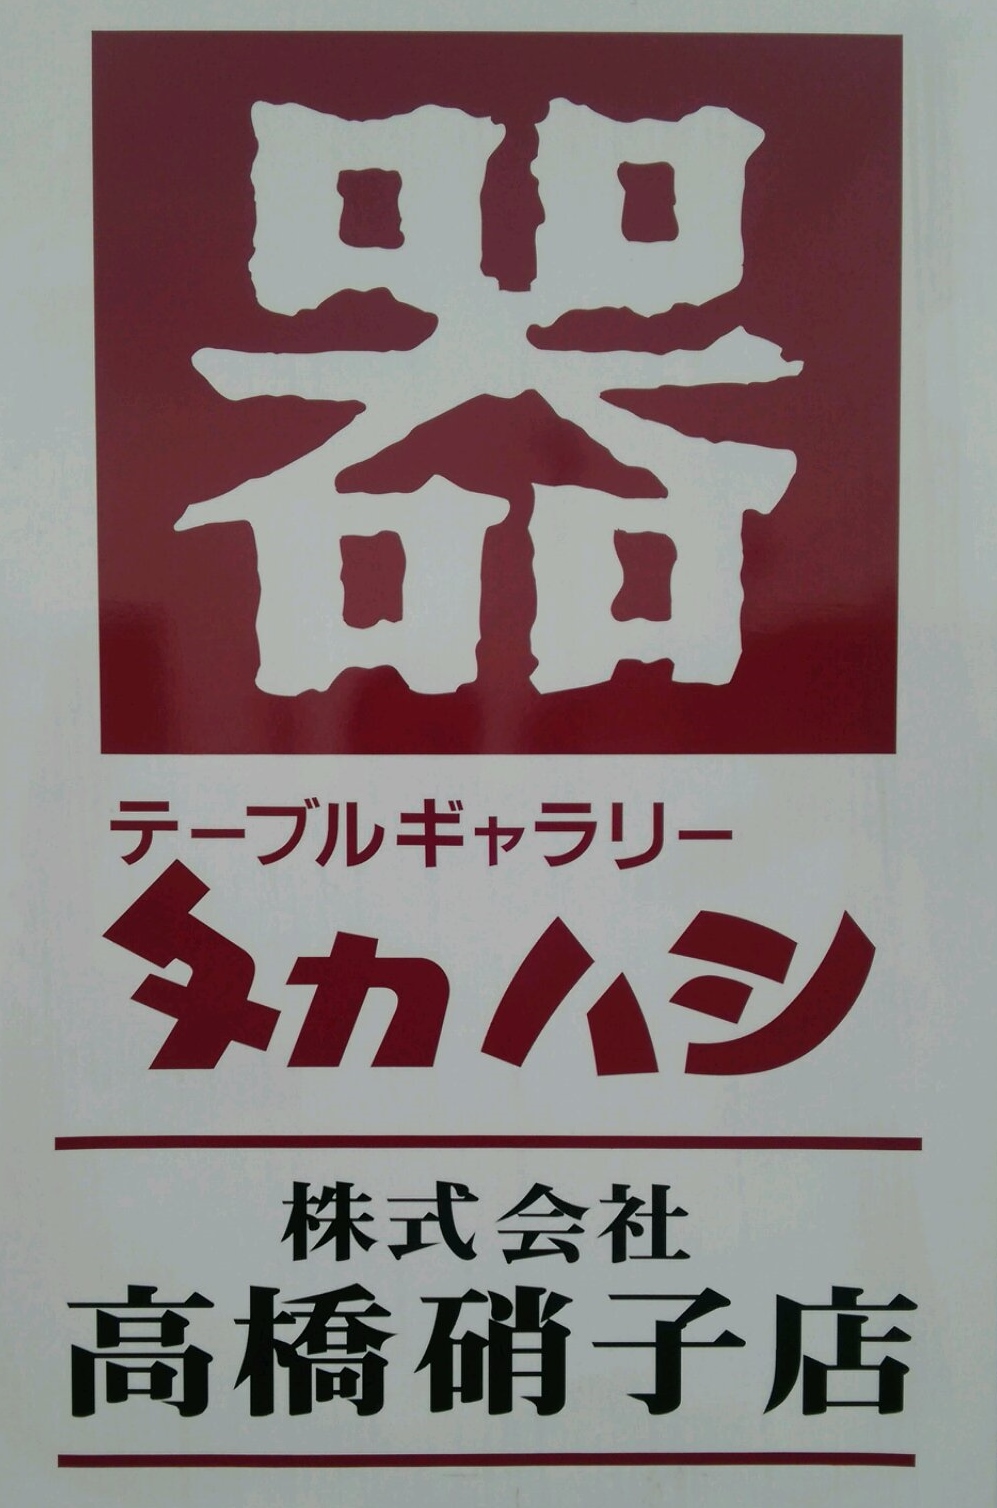 株式会社高橋硝子店は、グラス類、めし椀、丼物、皿鉢類などの食器を取り扱っています。